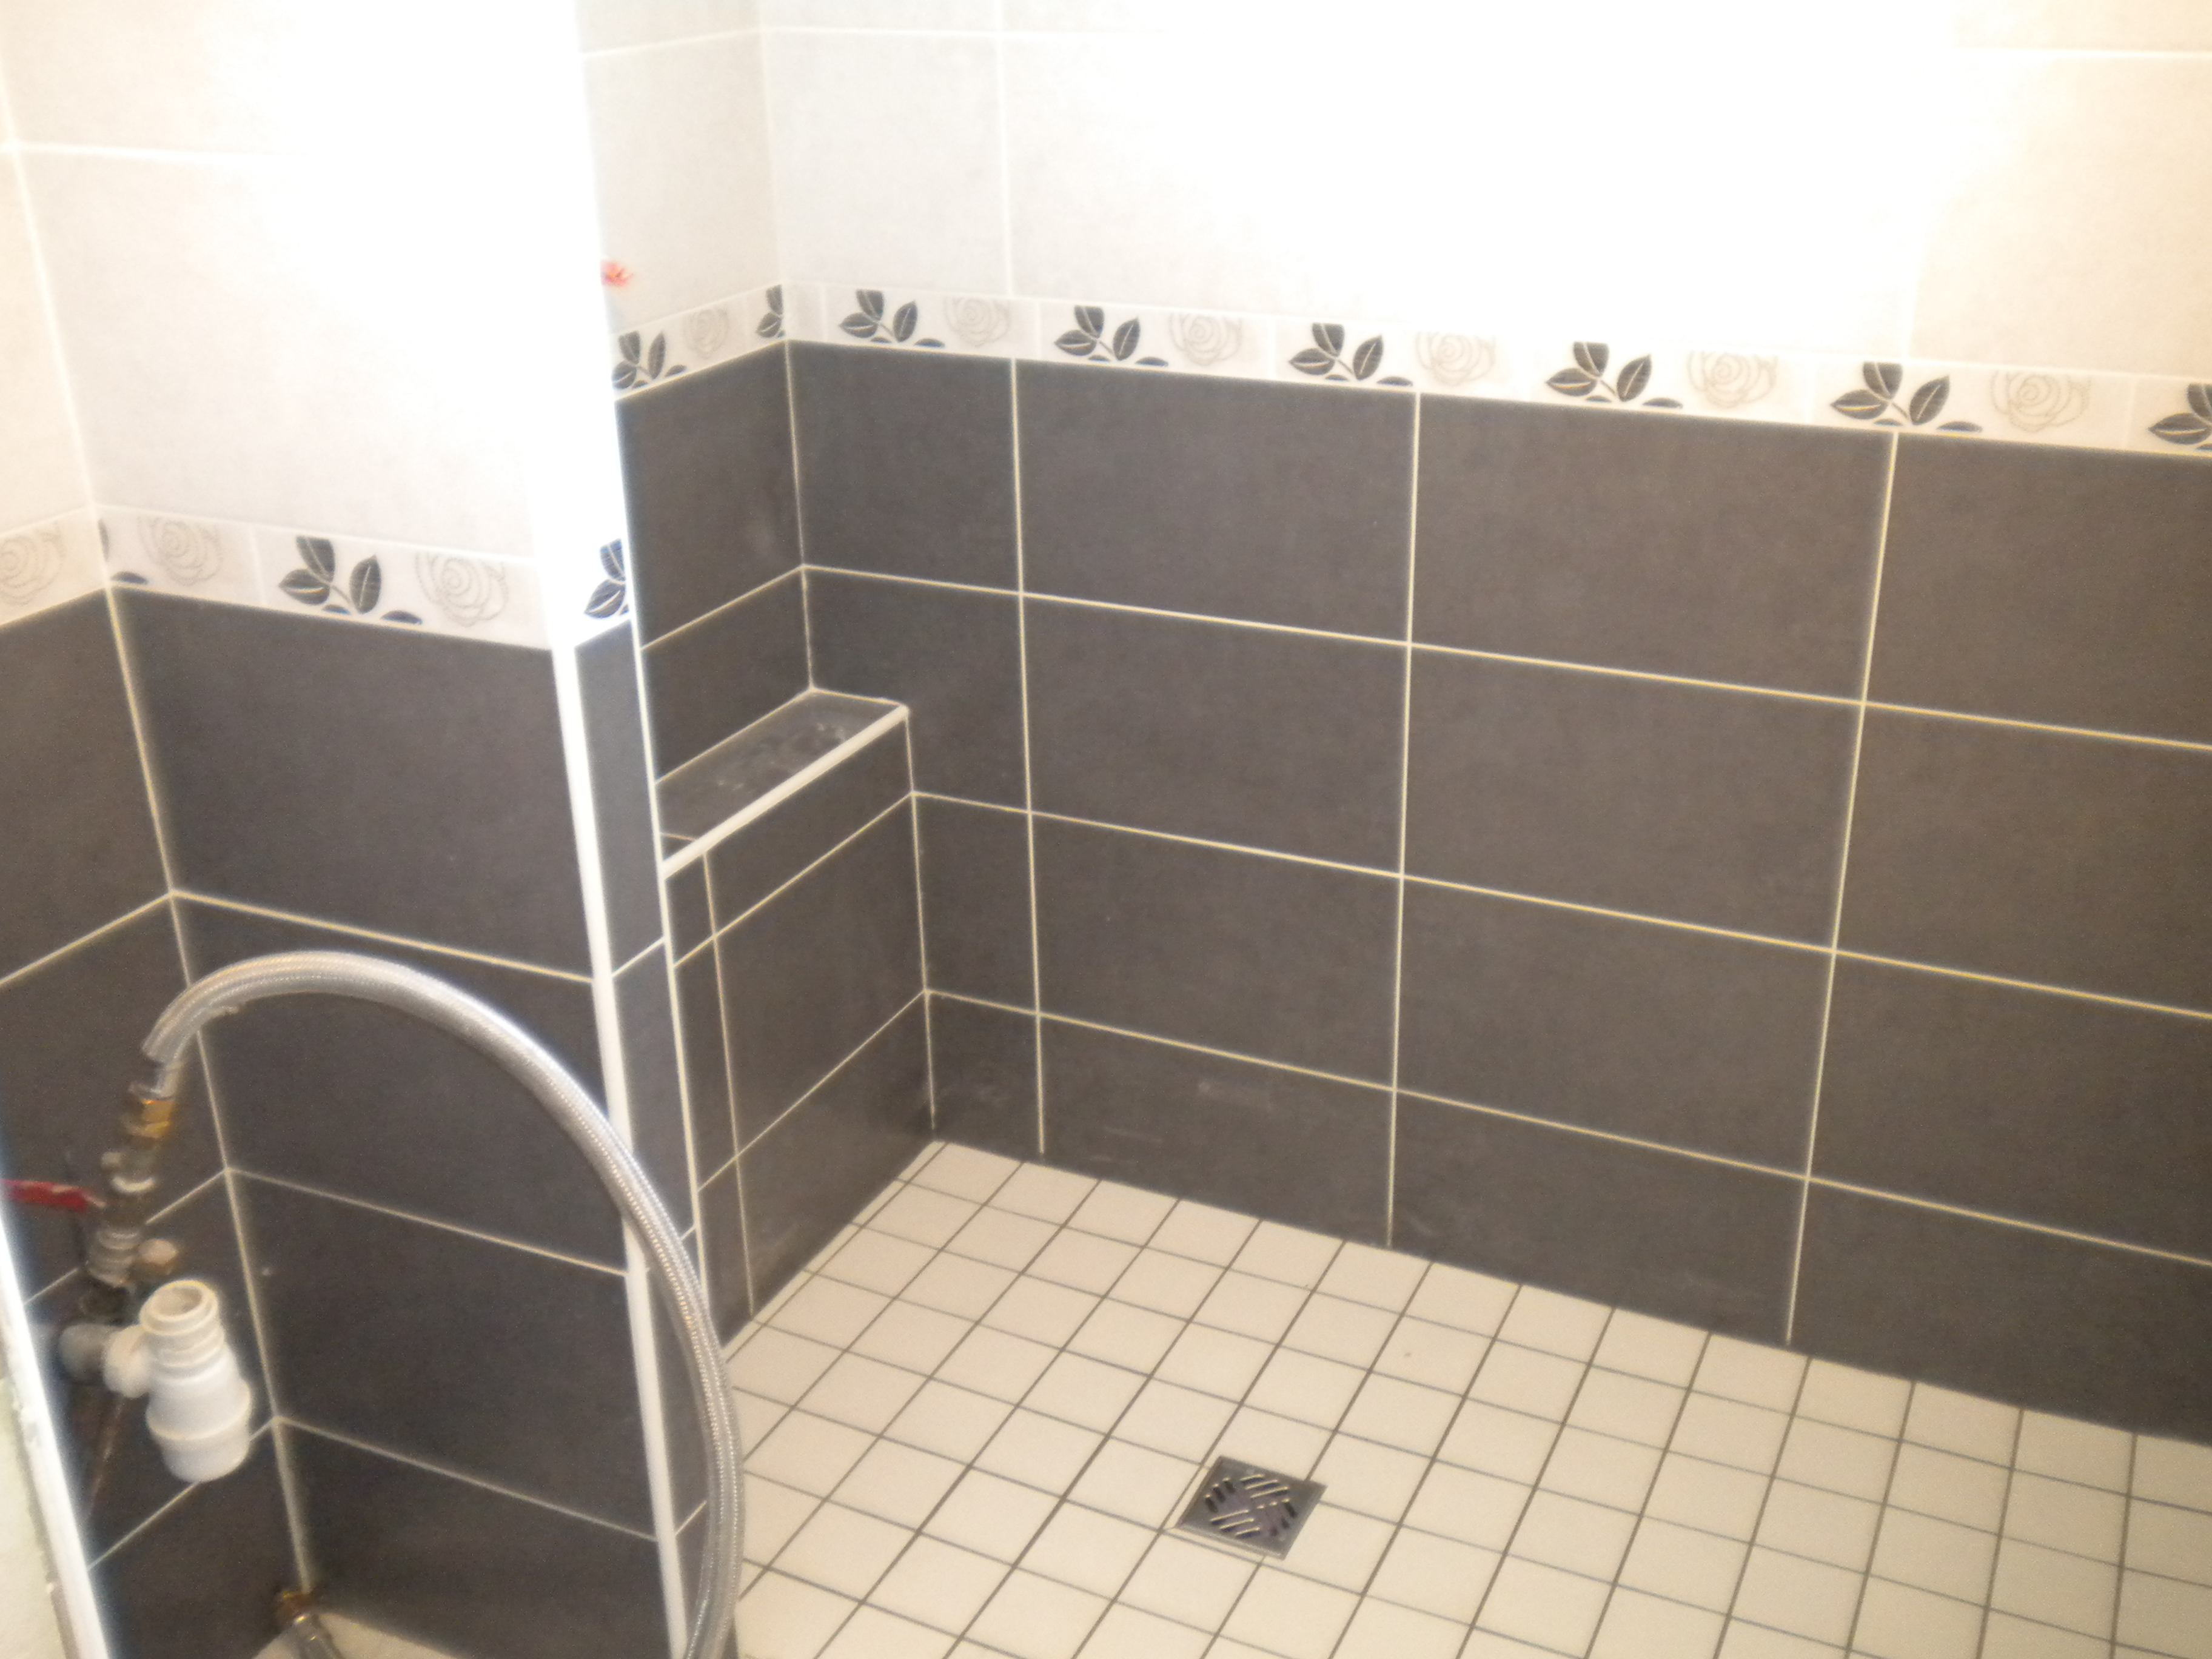 Salle de bains Dangeul accessibilité pour personnes à mobilités réduites (2)